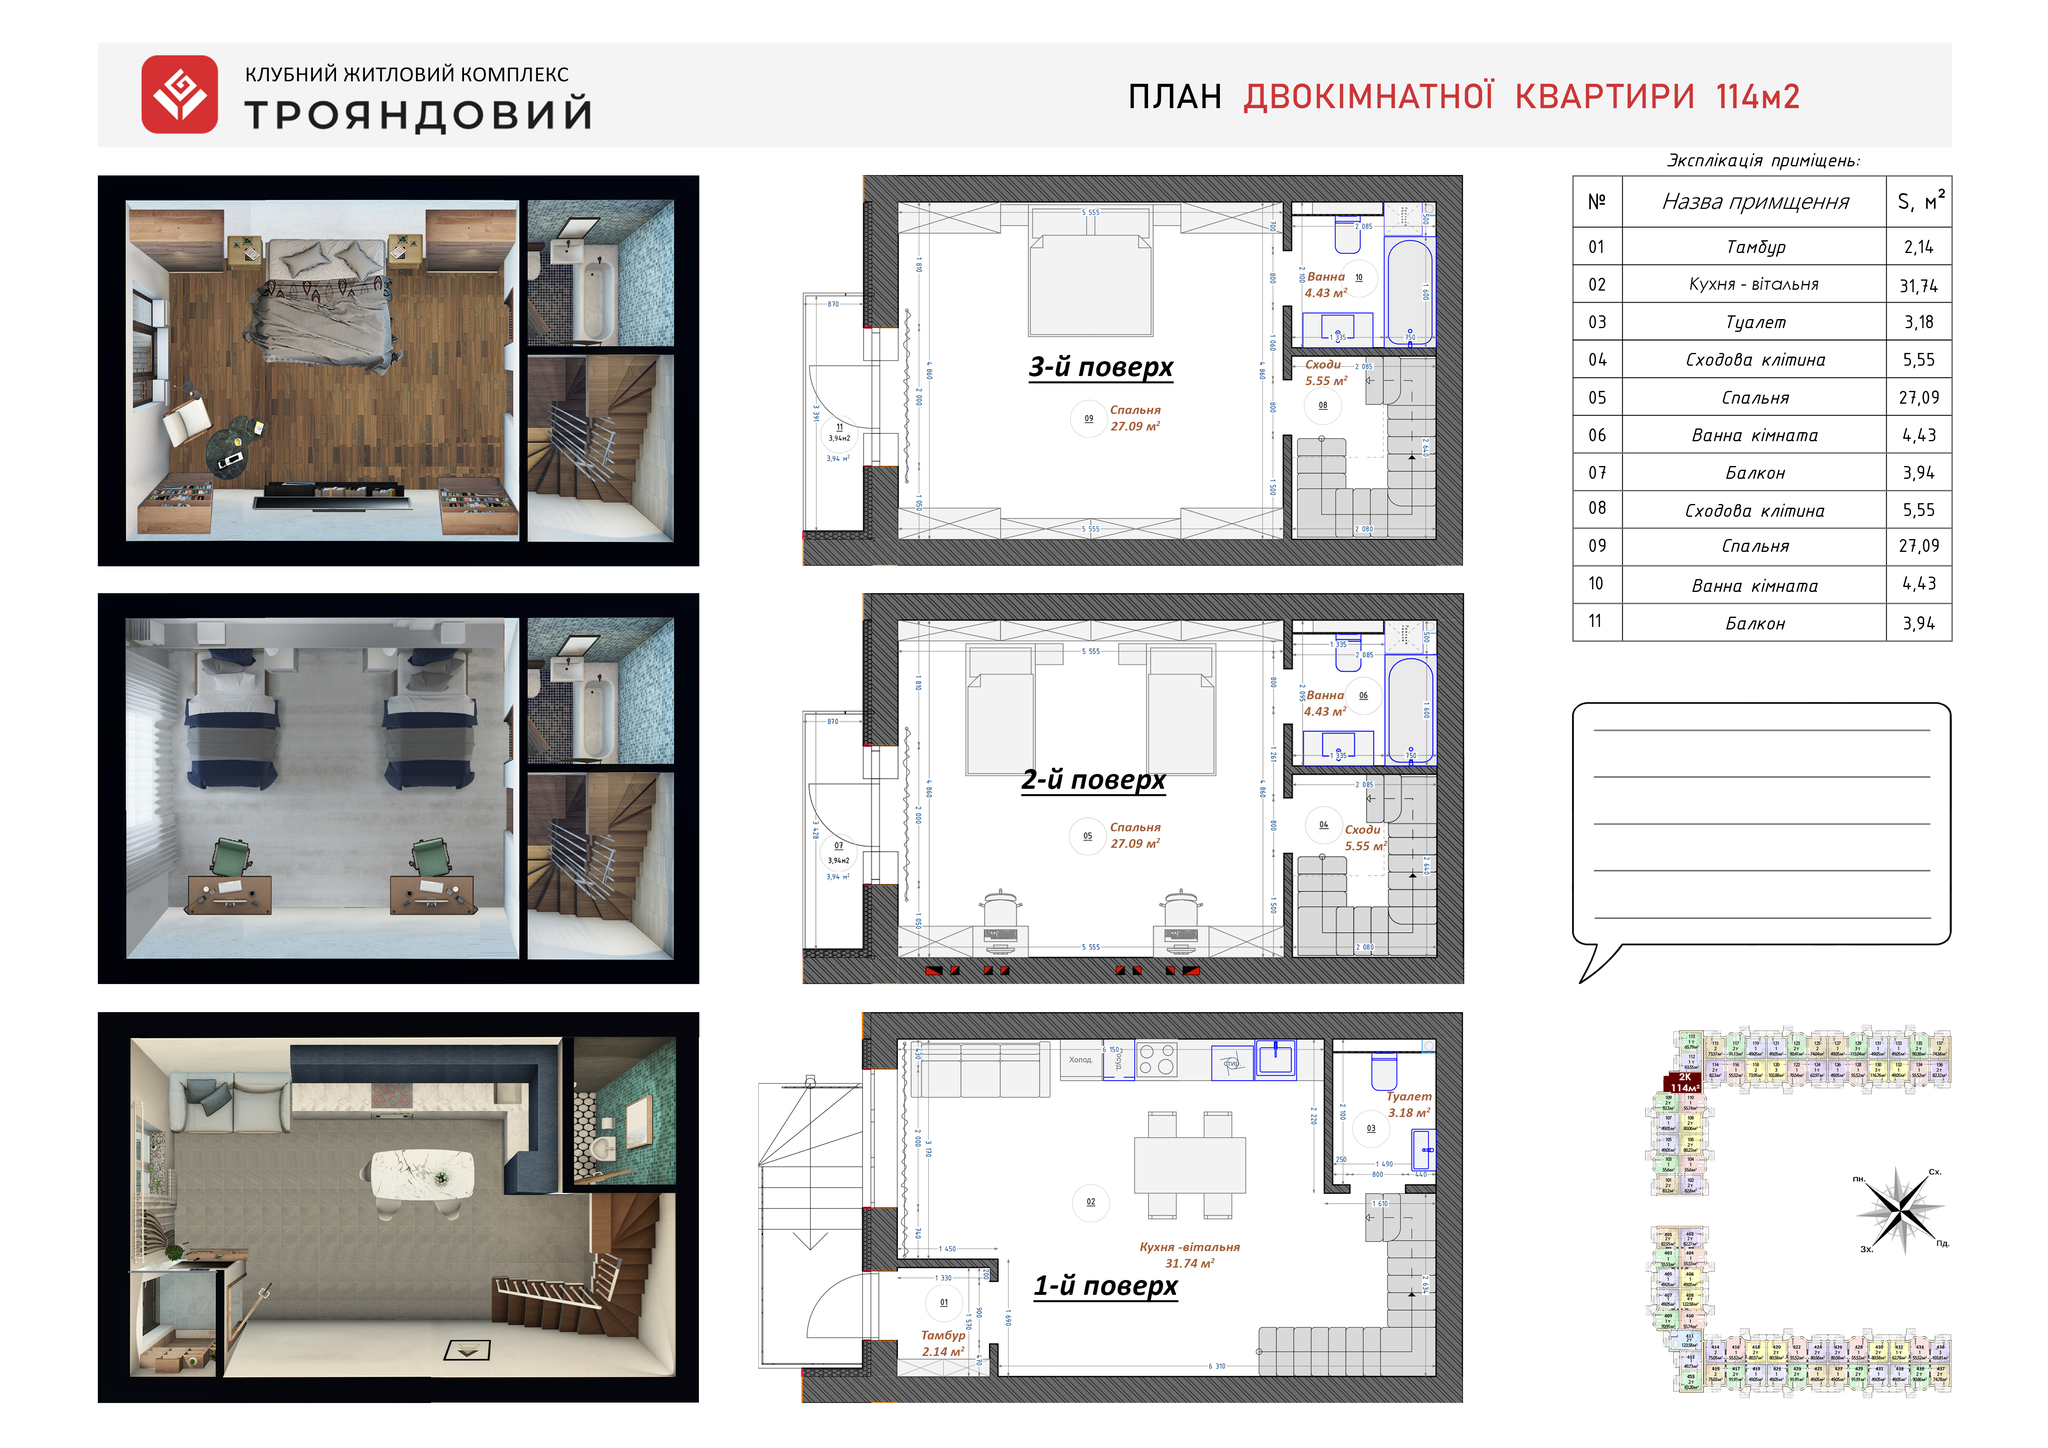 2-комнатная 114 м² в ЖК Трояндовый от 30 000 грн/м², г. Бровары